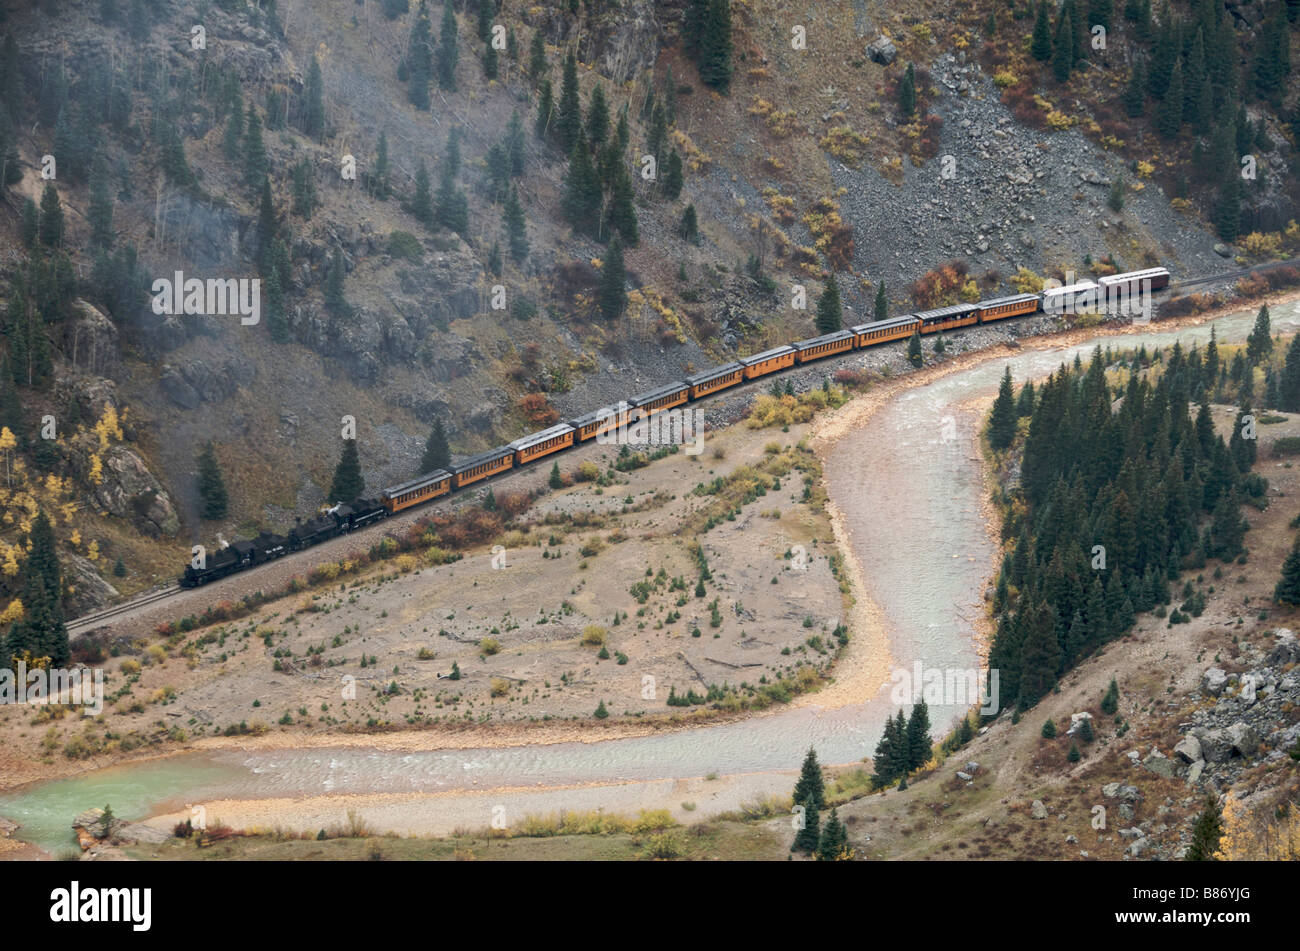 Vue aérienne de Durango Silverton Train à vapeur locomotives doubles avec Colorado USA Banque D'Images